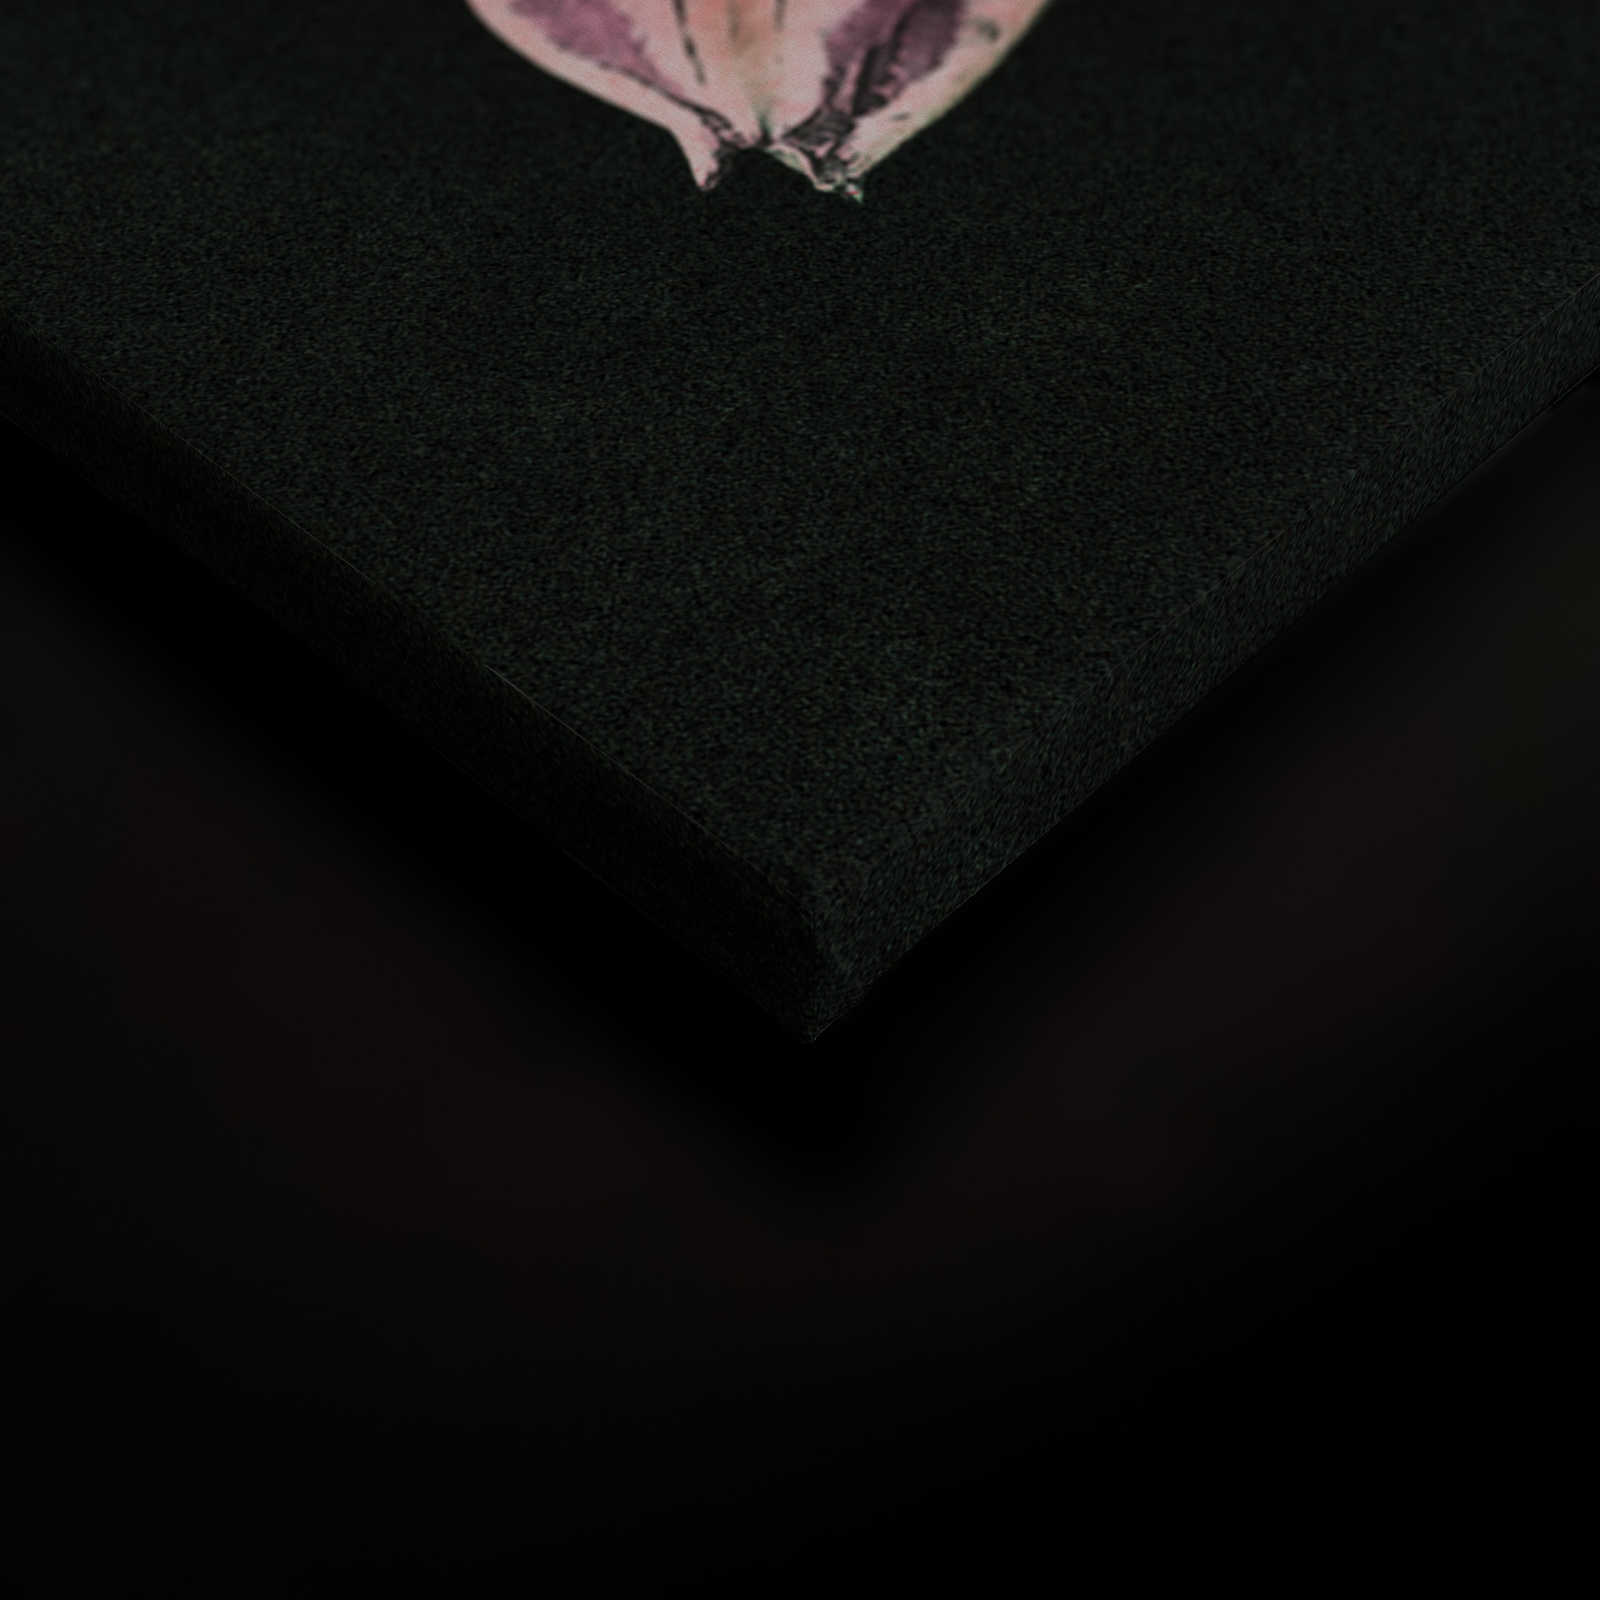             Drama queen 3 - Quadro su tela con bouquet di fiori romantico - Natura qualita consistenza in cartone - 0,90 m x 0,60 m
        